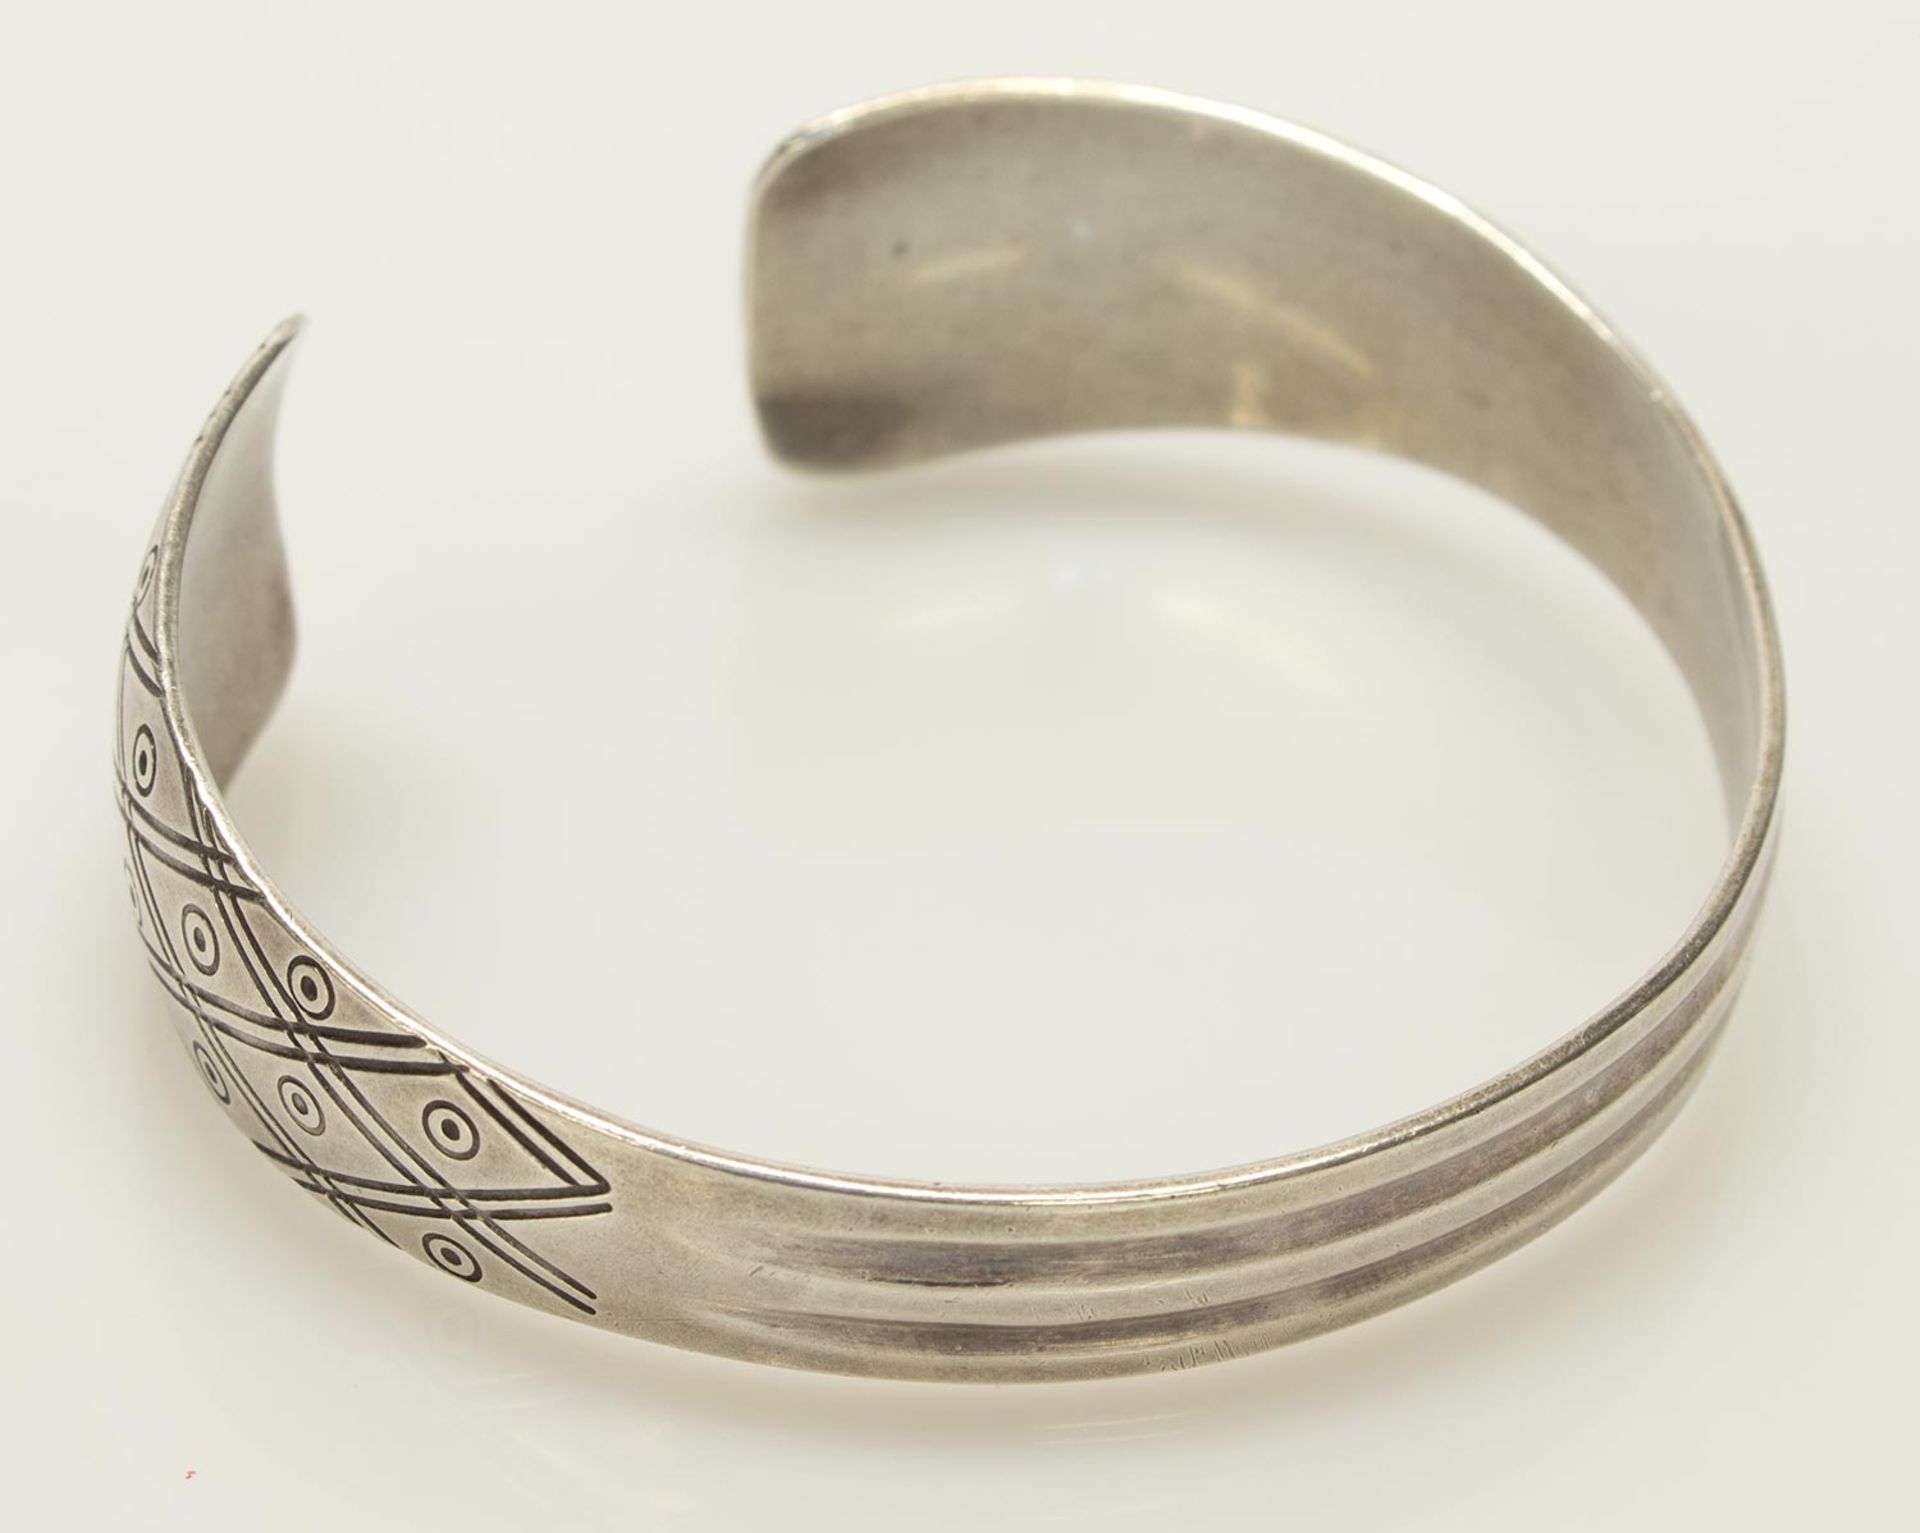 Armreif925er Silber, 24,77 g, offener Reif im Verlauf, ovale Form, breite Enden mit Muster, ca. 6,